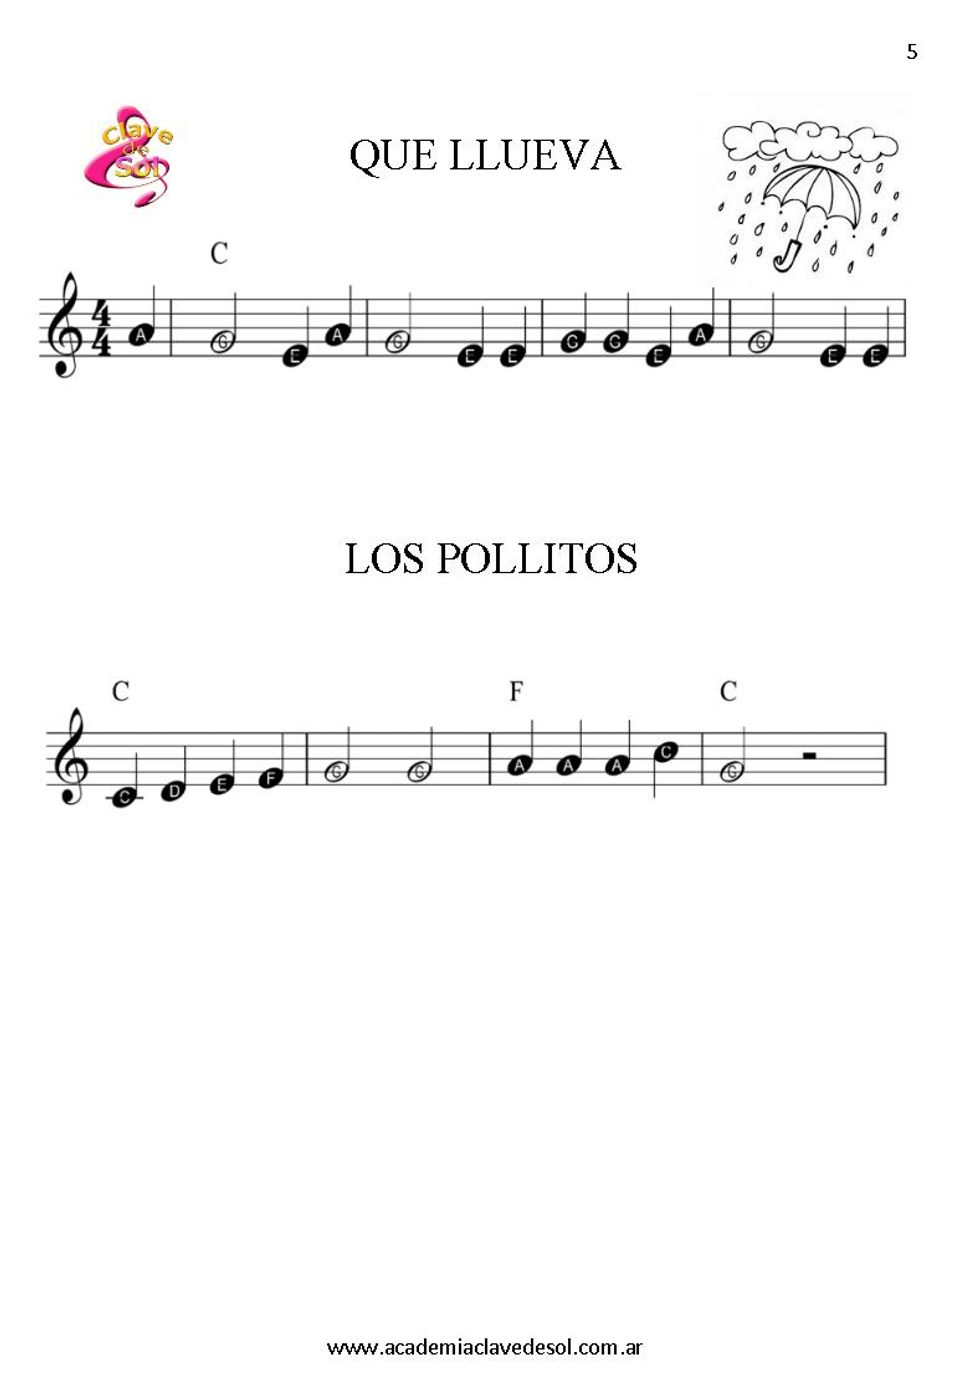 Que llueva, que llueva y Los pollitos (facilitada con letras) by Laura S